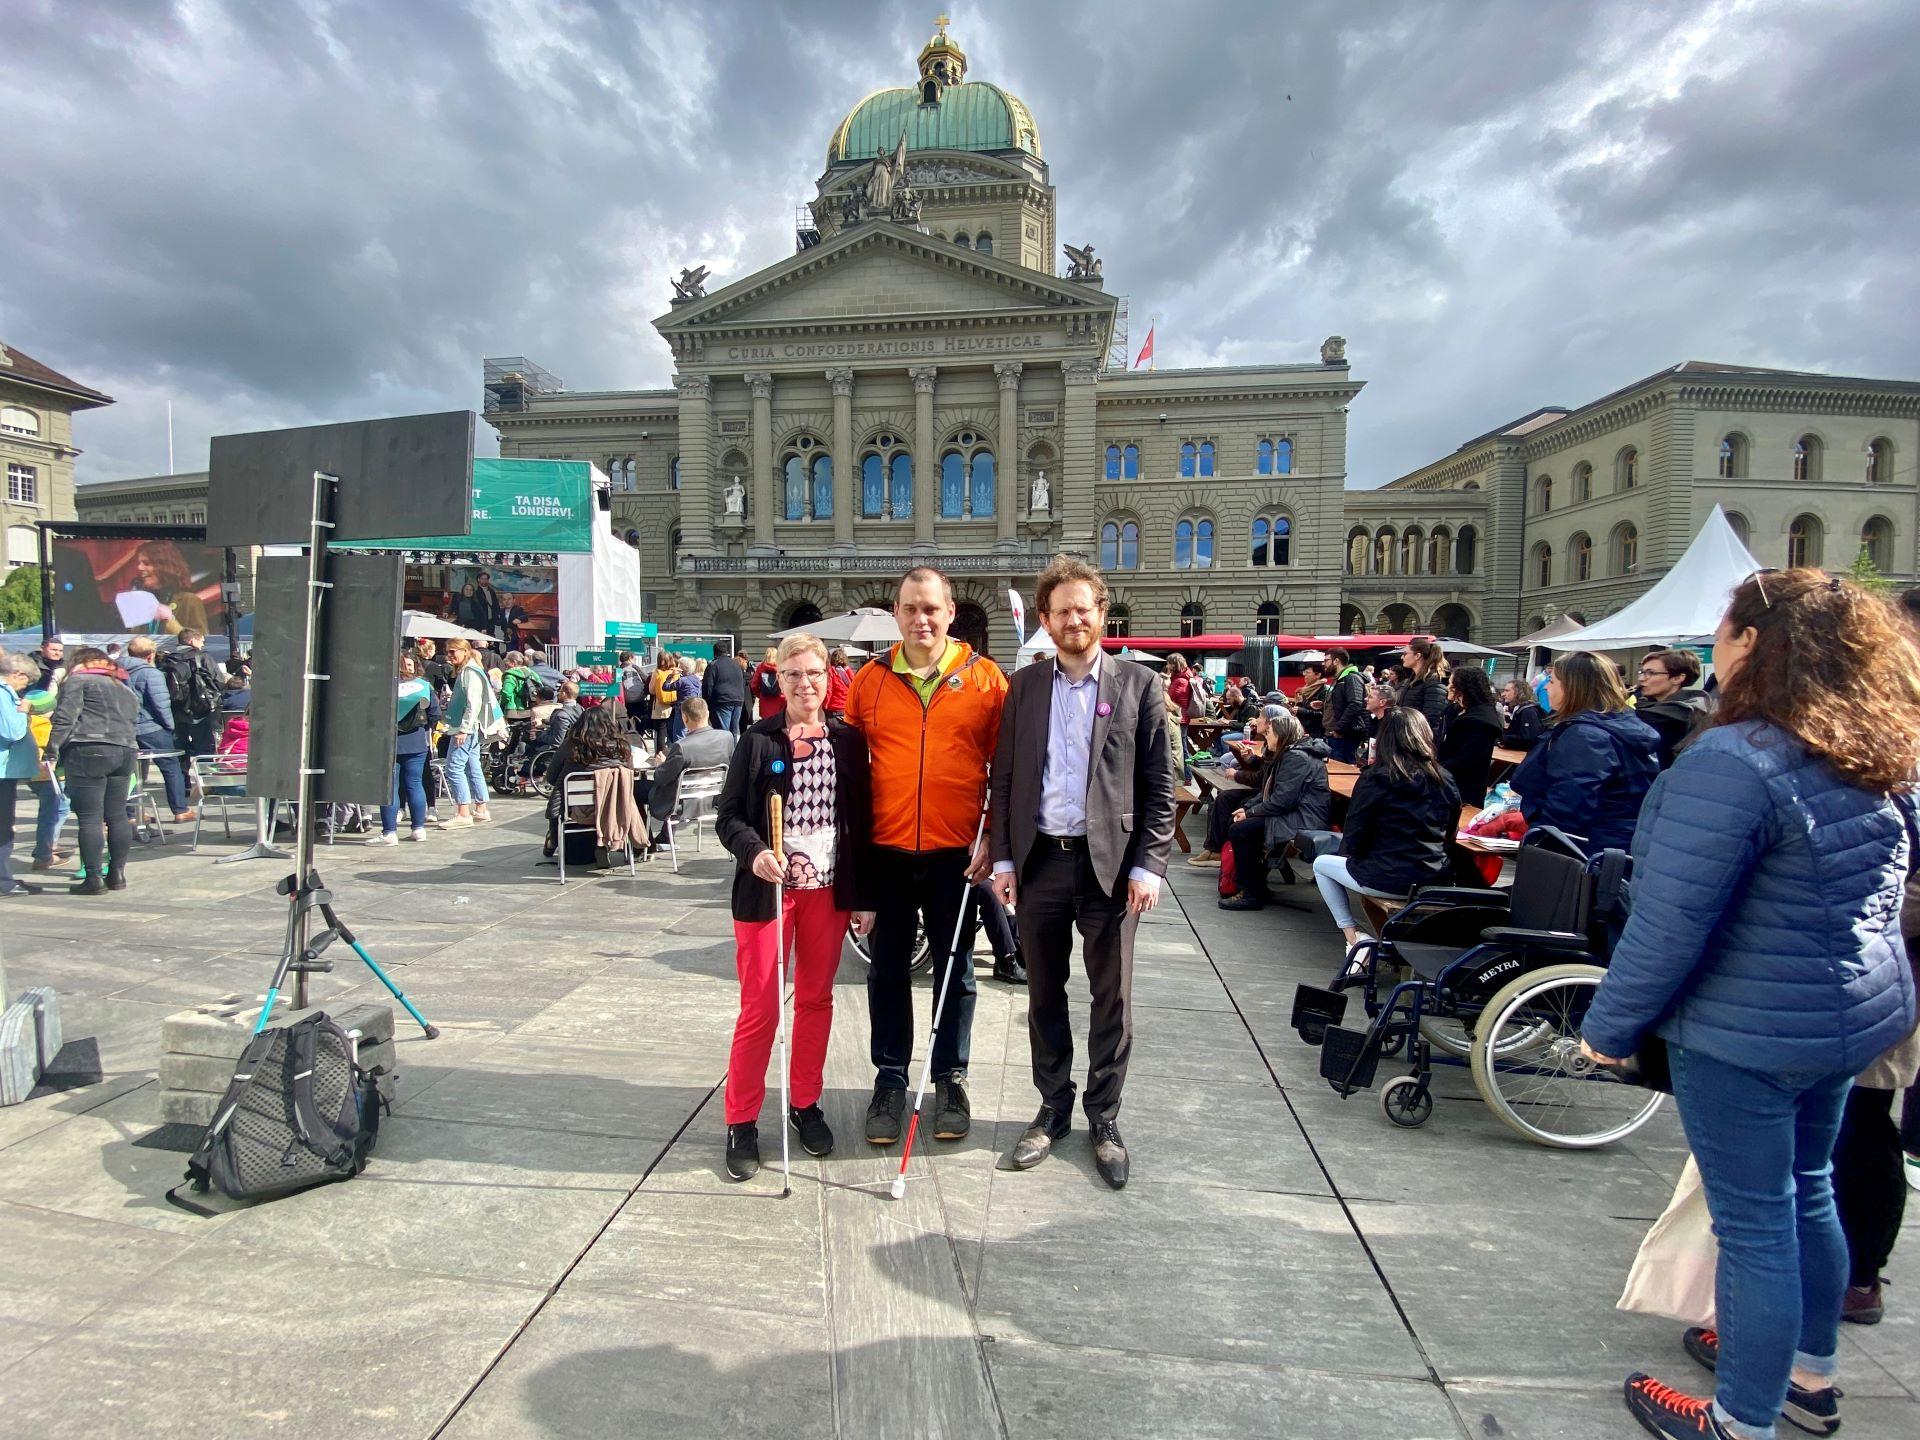 Les trois candidats au Conseil national malvoyants Marianne Plüss (Berne), Sébastien Piguet (Vaud) et Cyril Mizrahi (Genève) sont ensemble devant le Palais fédéral.